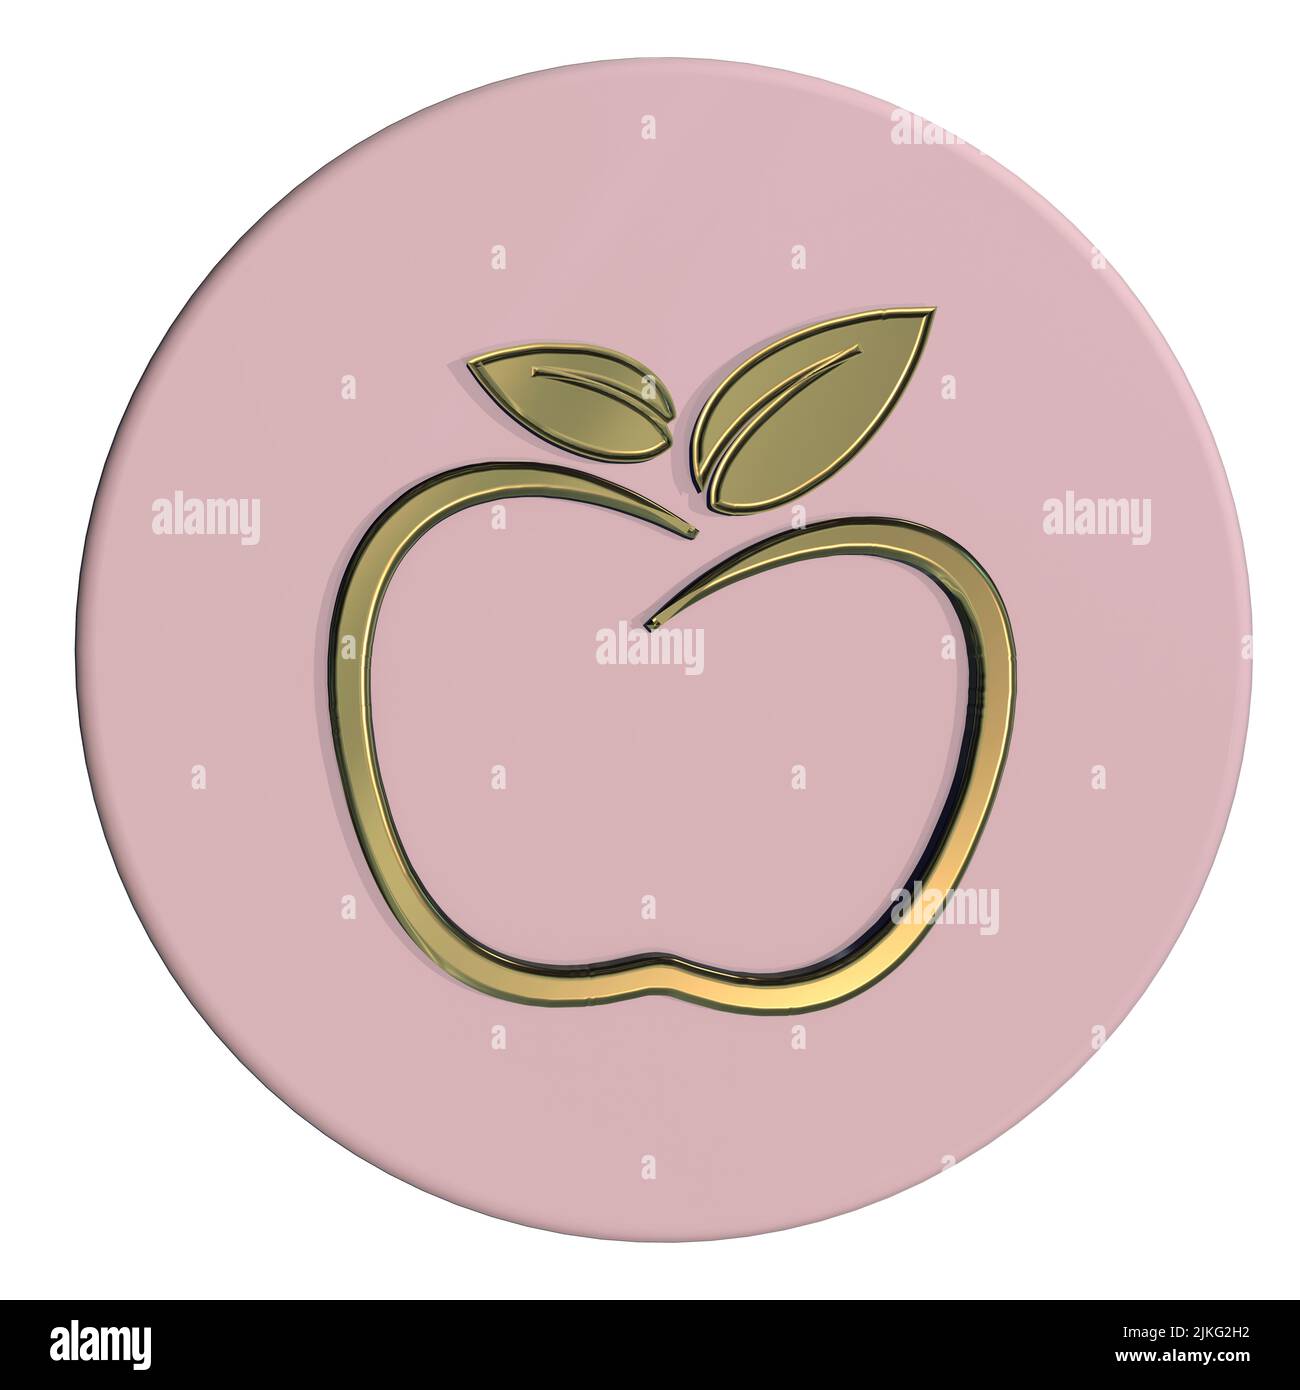 Grafikdesign Logo Apfel Konzept gesunde Ernährung Diät Konzept gesunde Lebensweise Konzept isoliert weißen Hintergrund Stockfoto